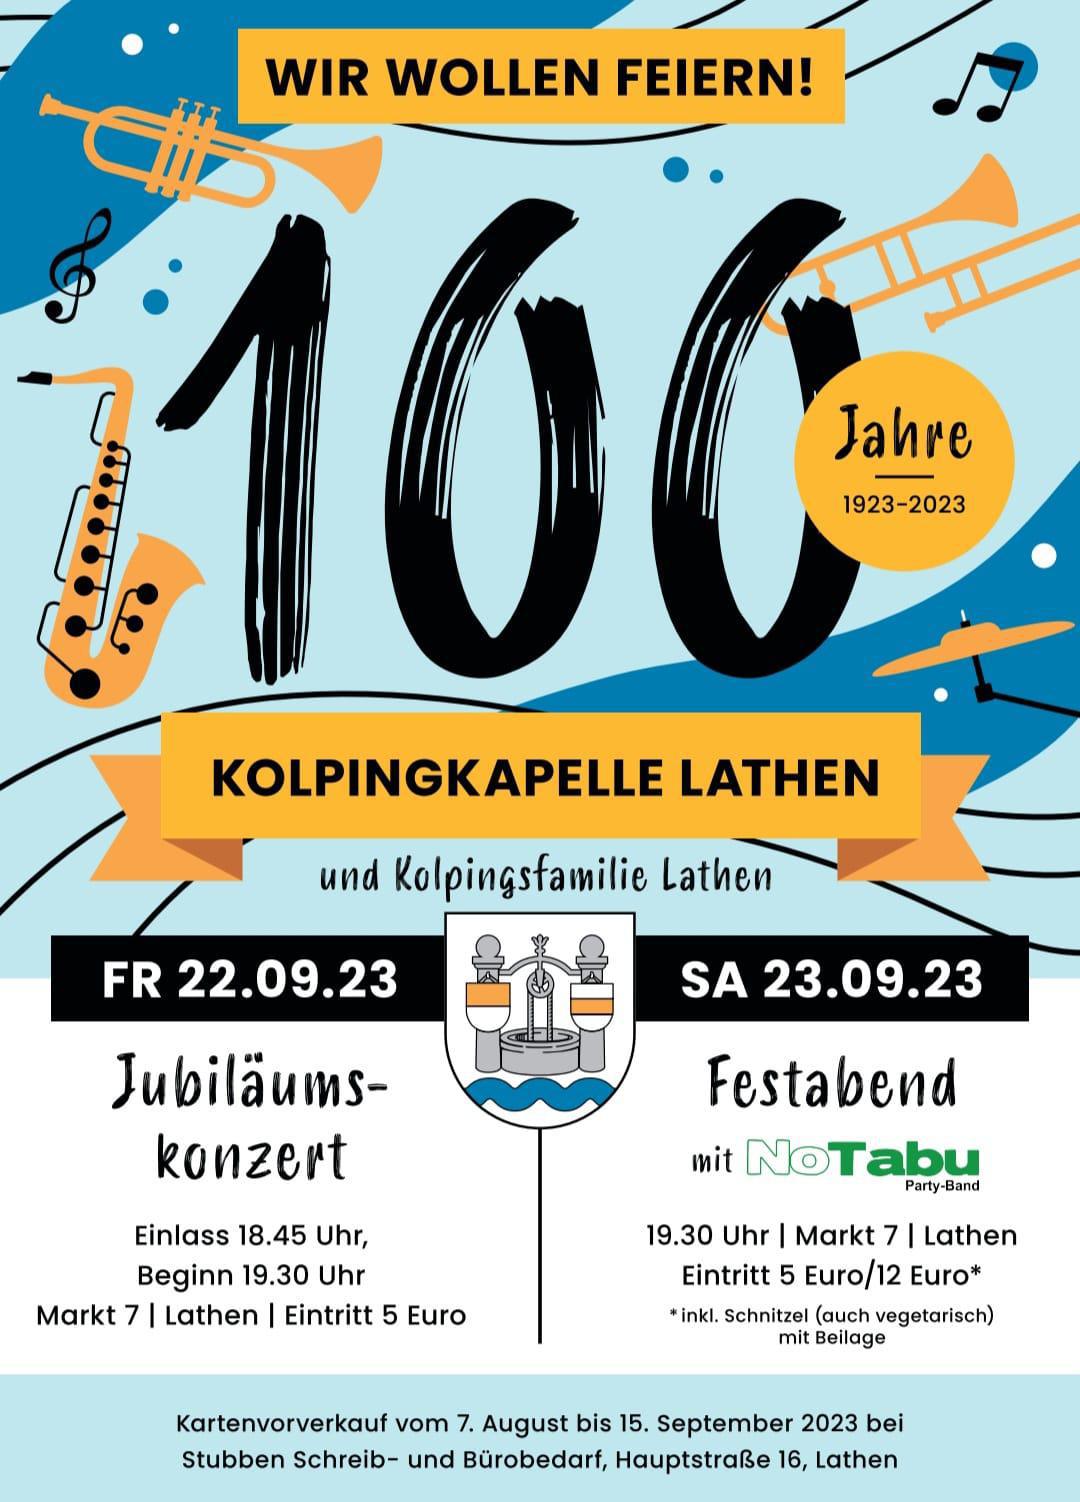 Konzert und Festball zum Jubiläum 100 Jahre Kolpingkapelle Lathen